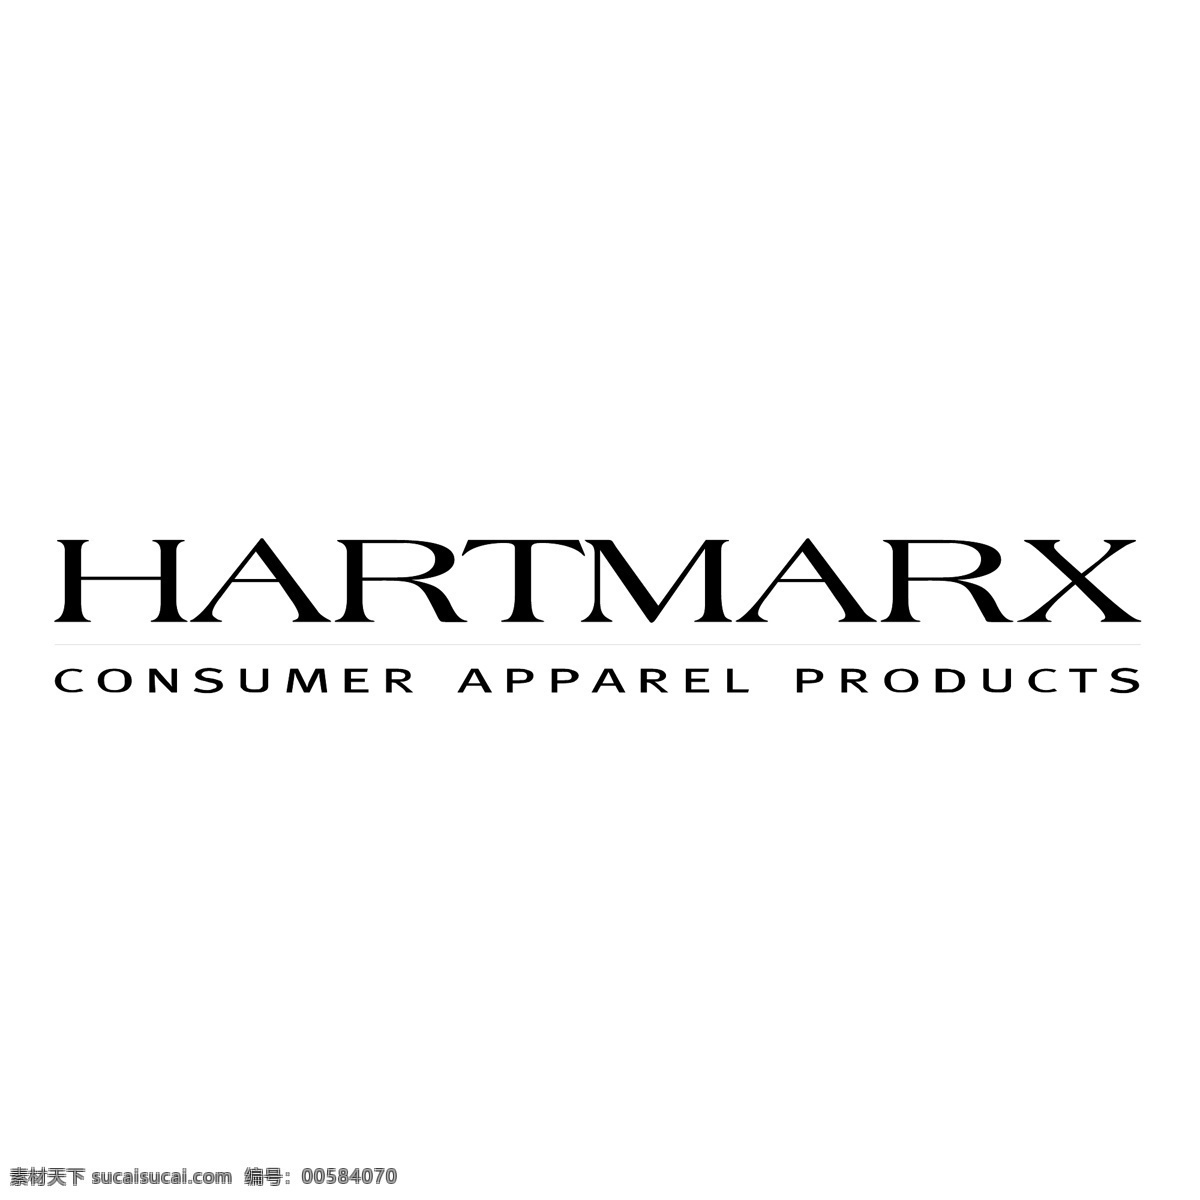 哈特 马克斯 免费 名称 标识 psd源文件 logo设计